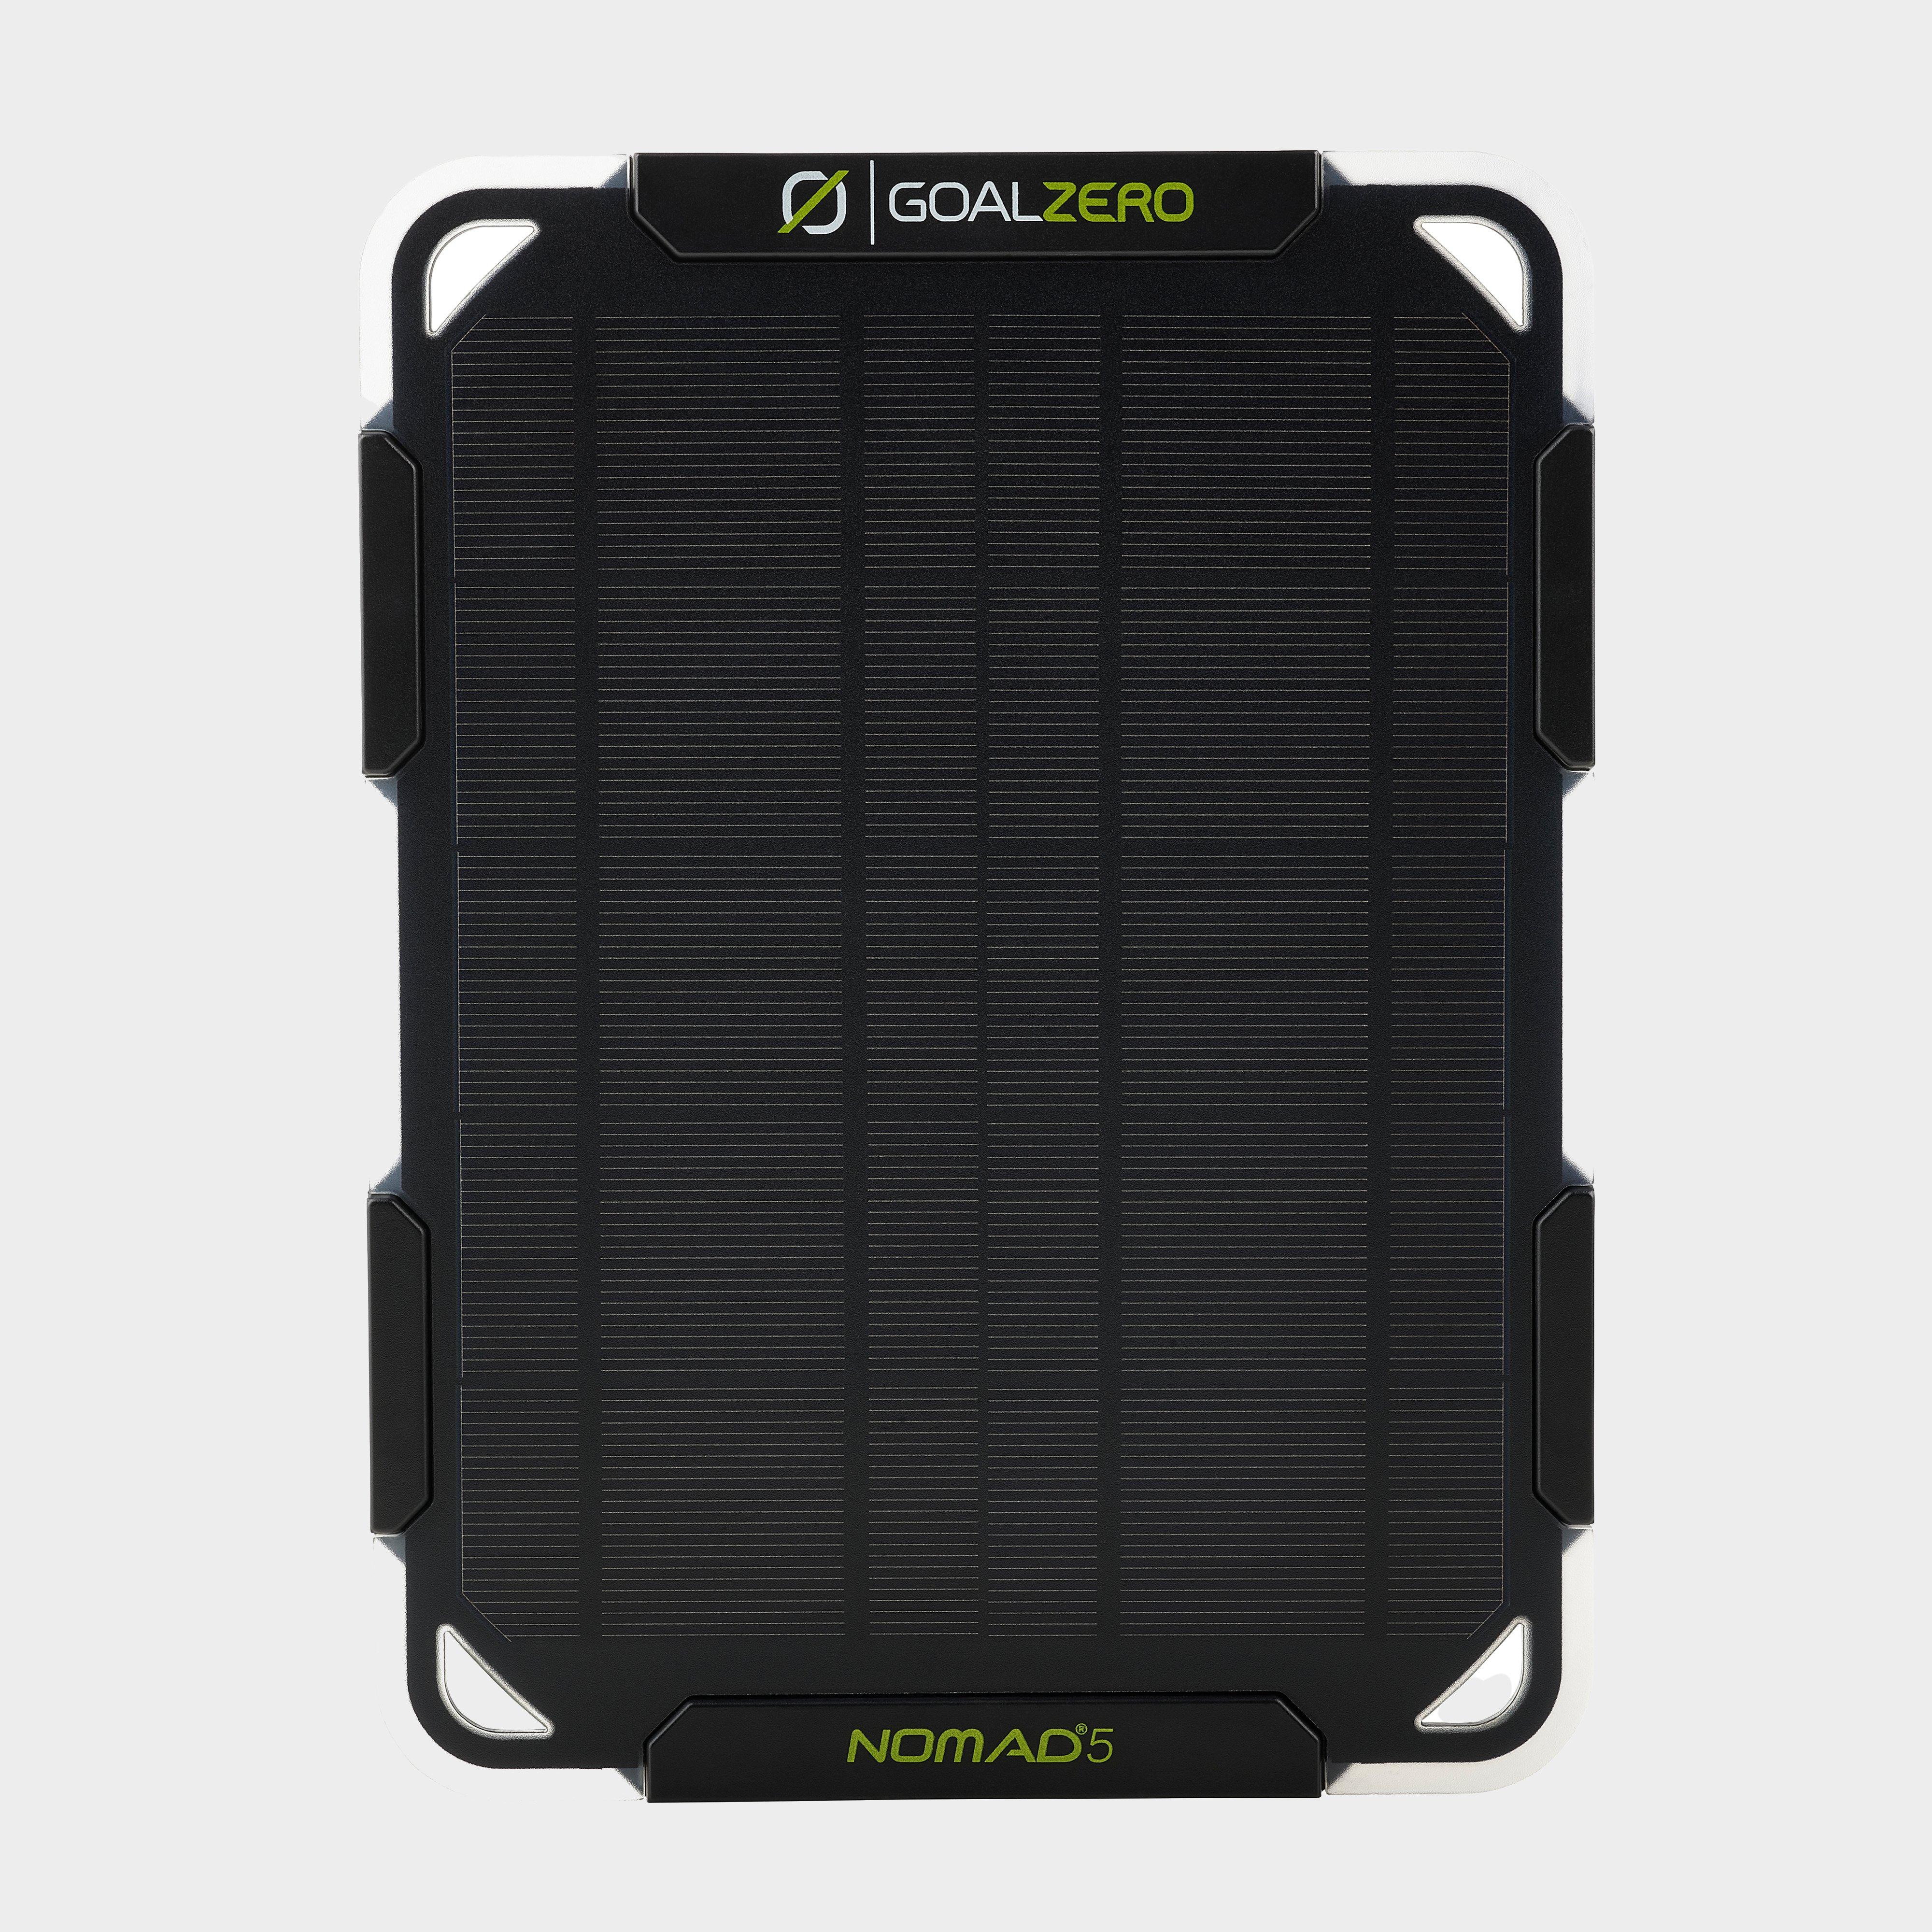 Goal Zero Nomad 5 Solar Panel Review